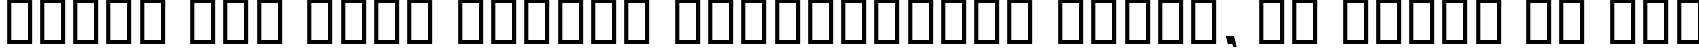 Пример написания шрифтом B Nasim Bold текста на русском